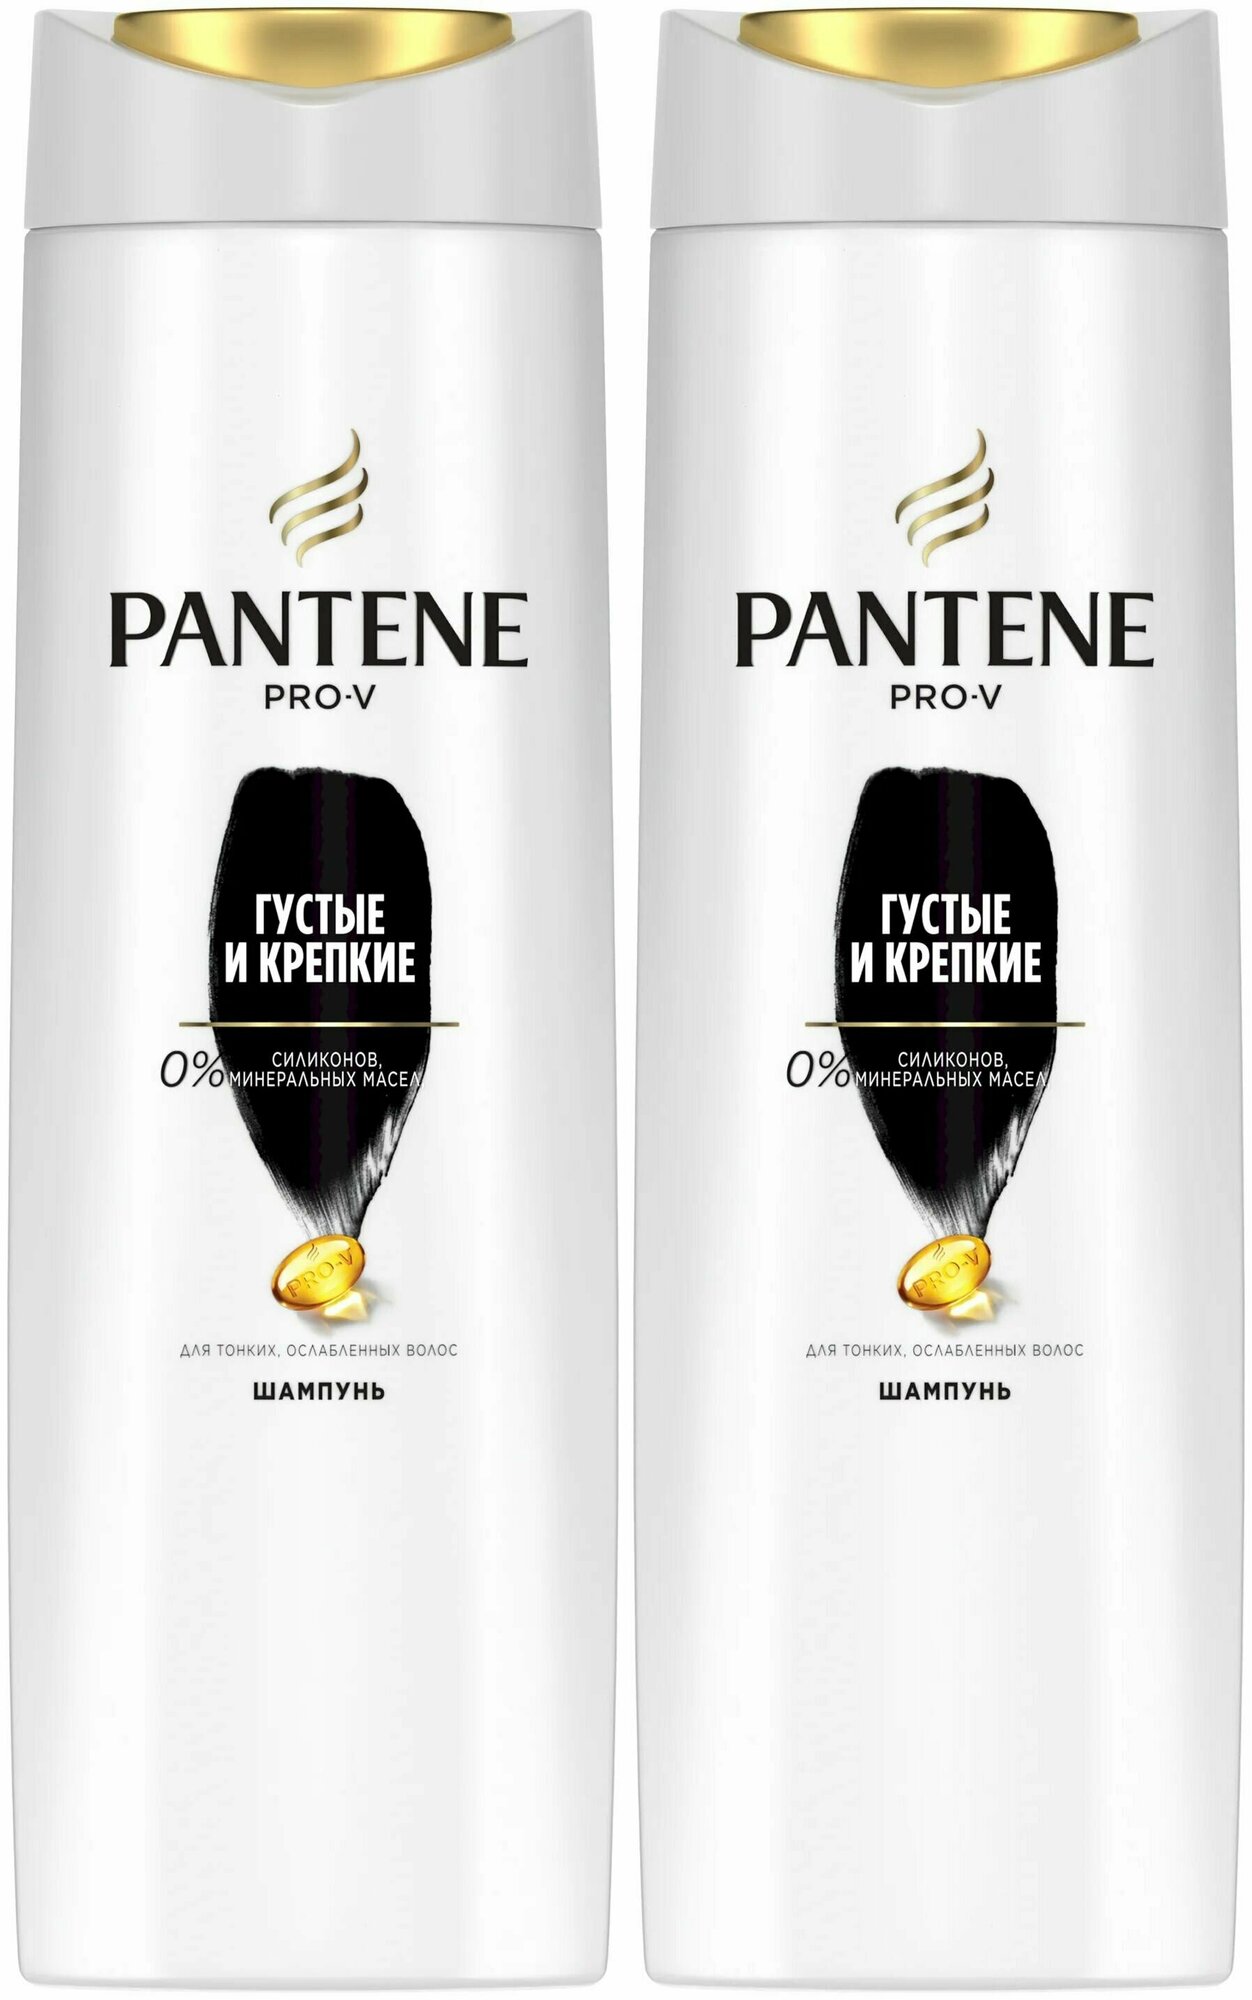 Pantene Pro-V Шампунь для волос, Густые и крепкие, 400 мл, 2 шт